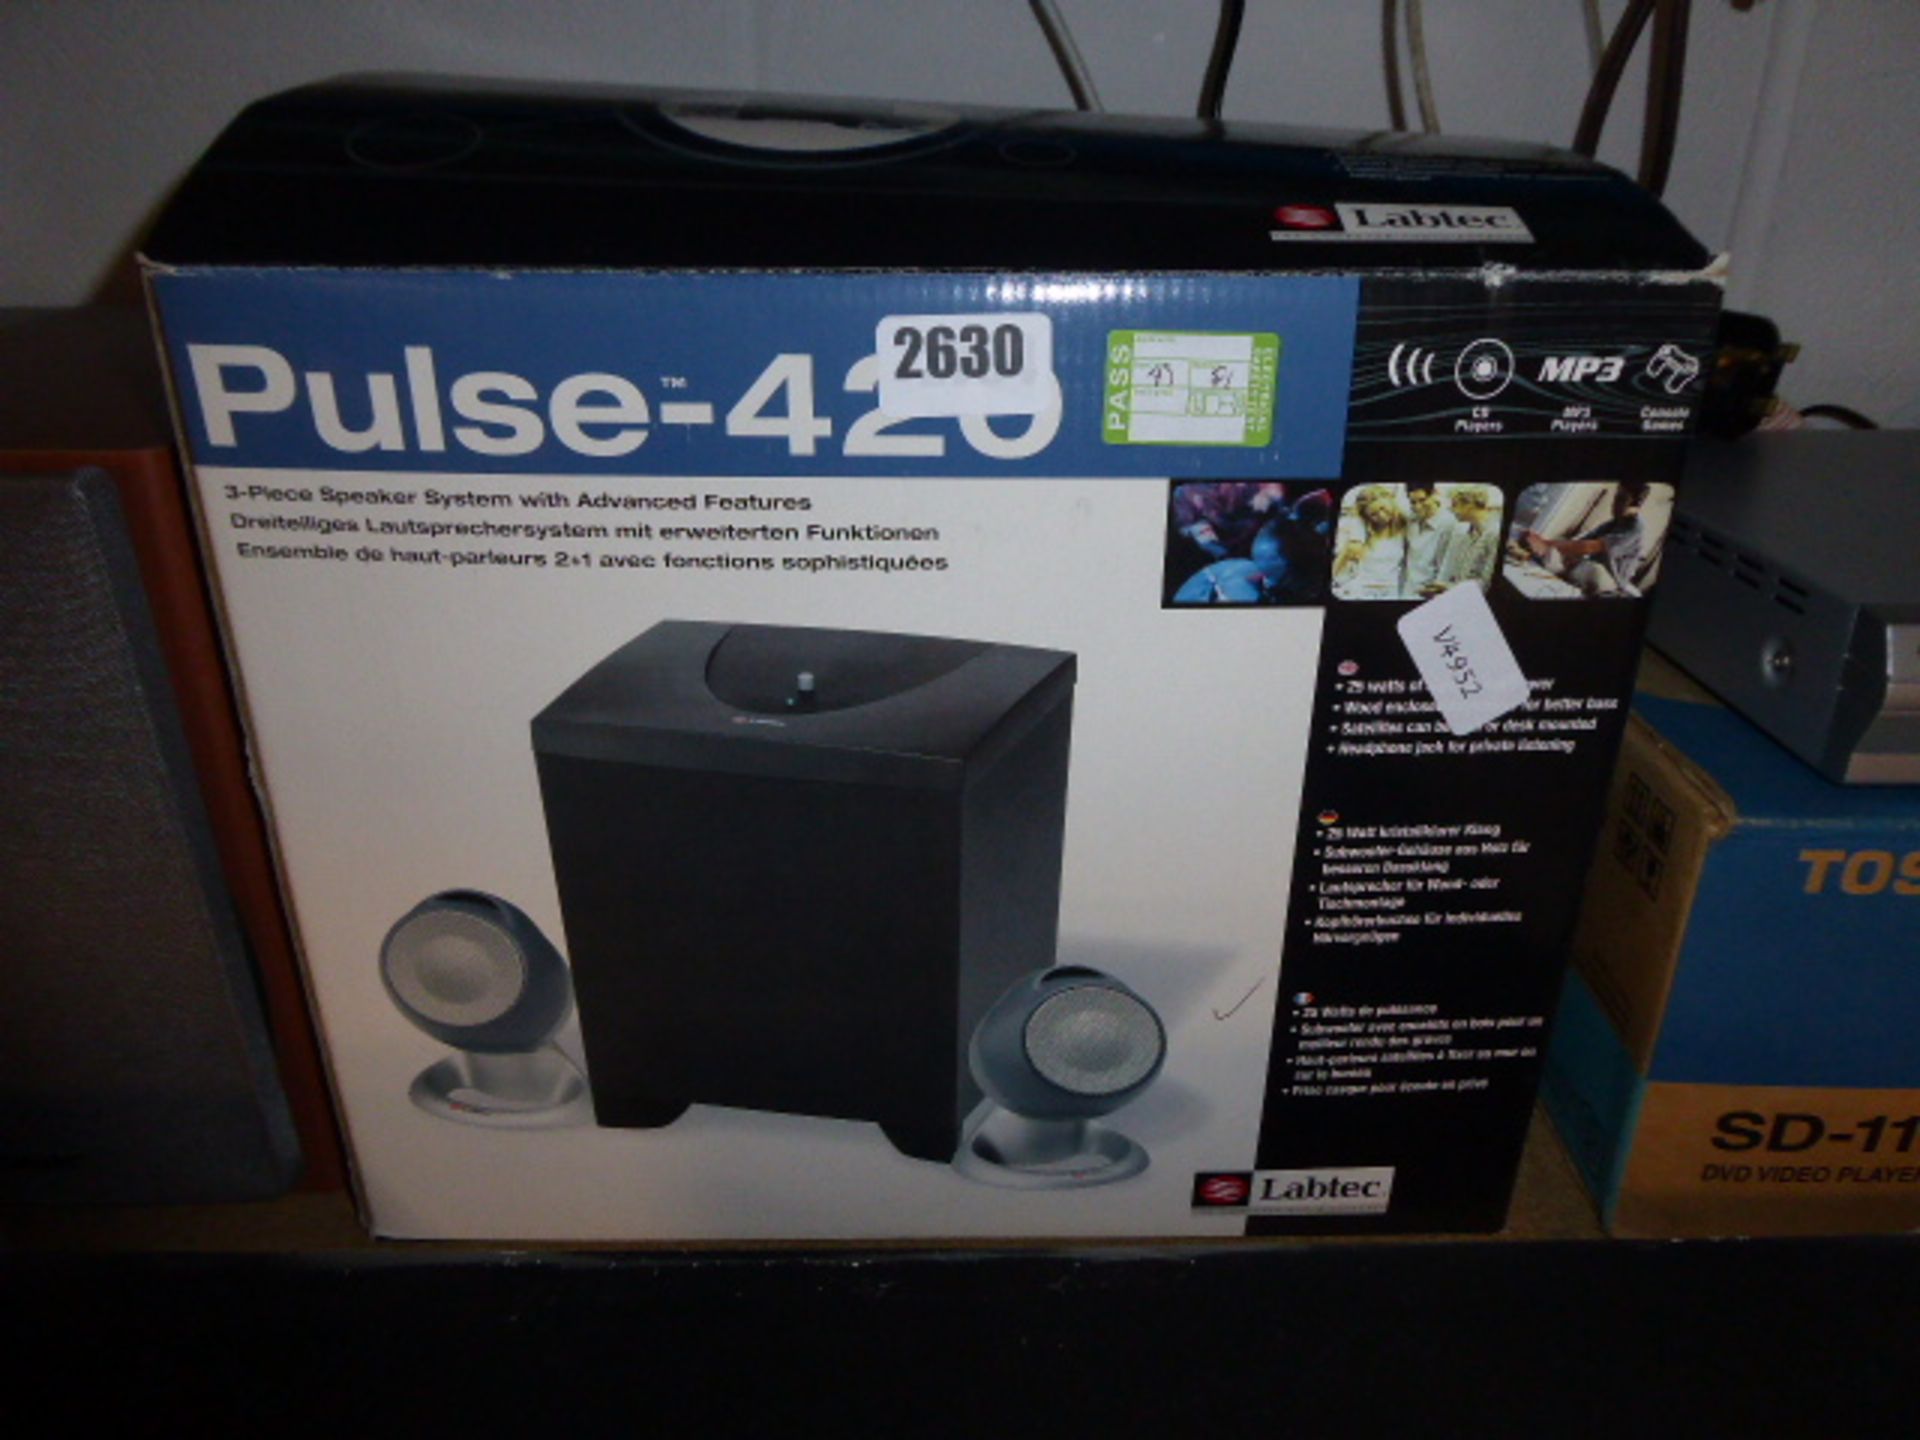 2704 Lab tech pulse 420 speaker set in box